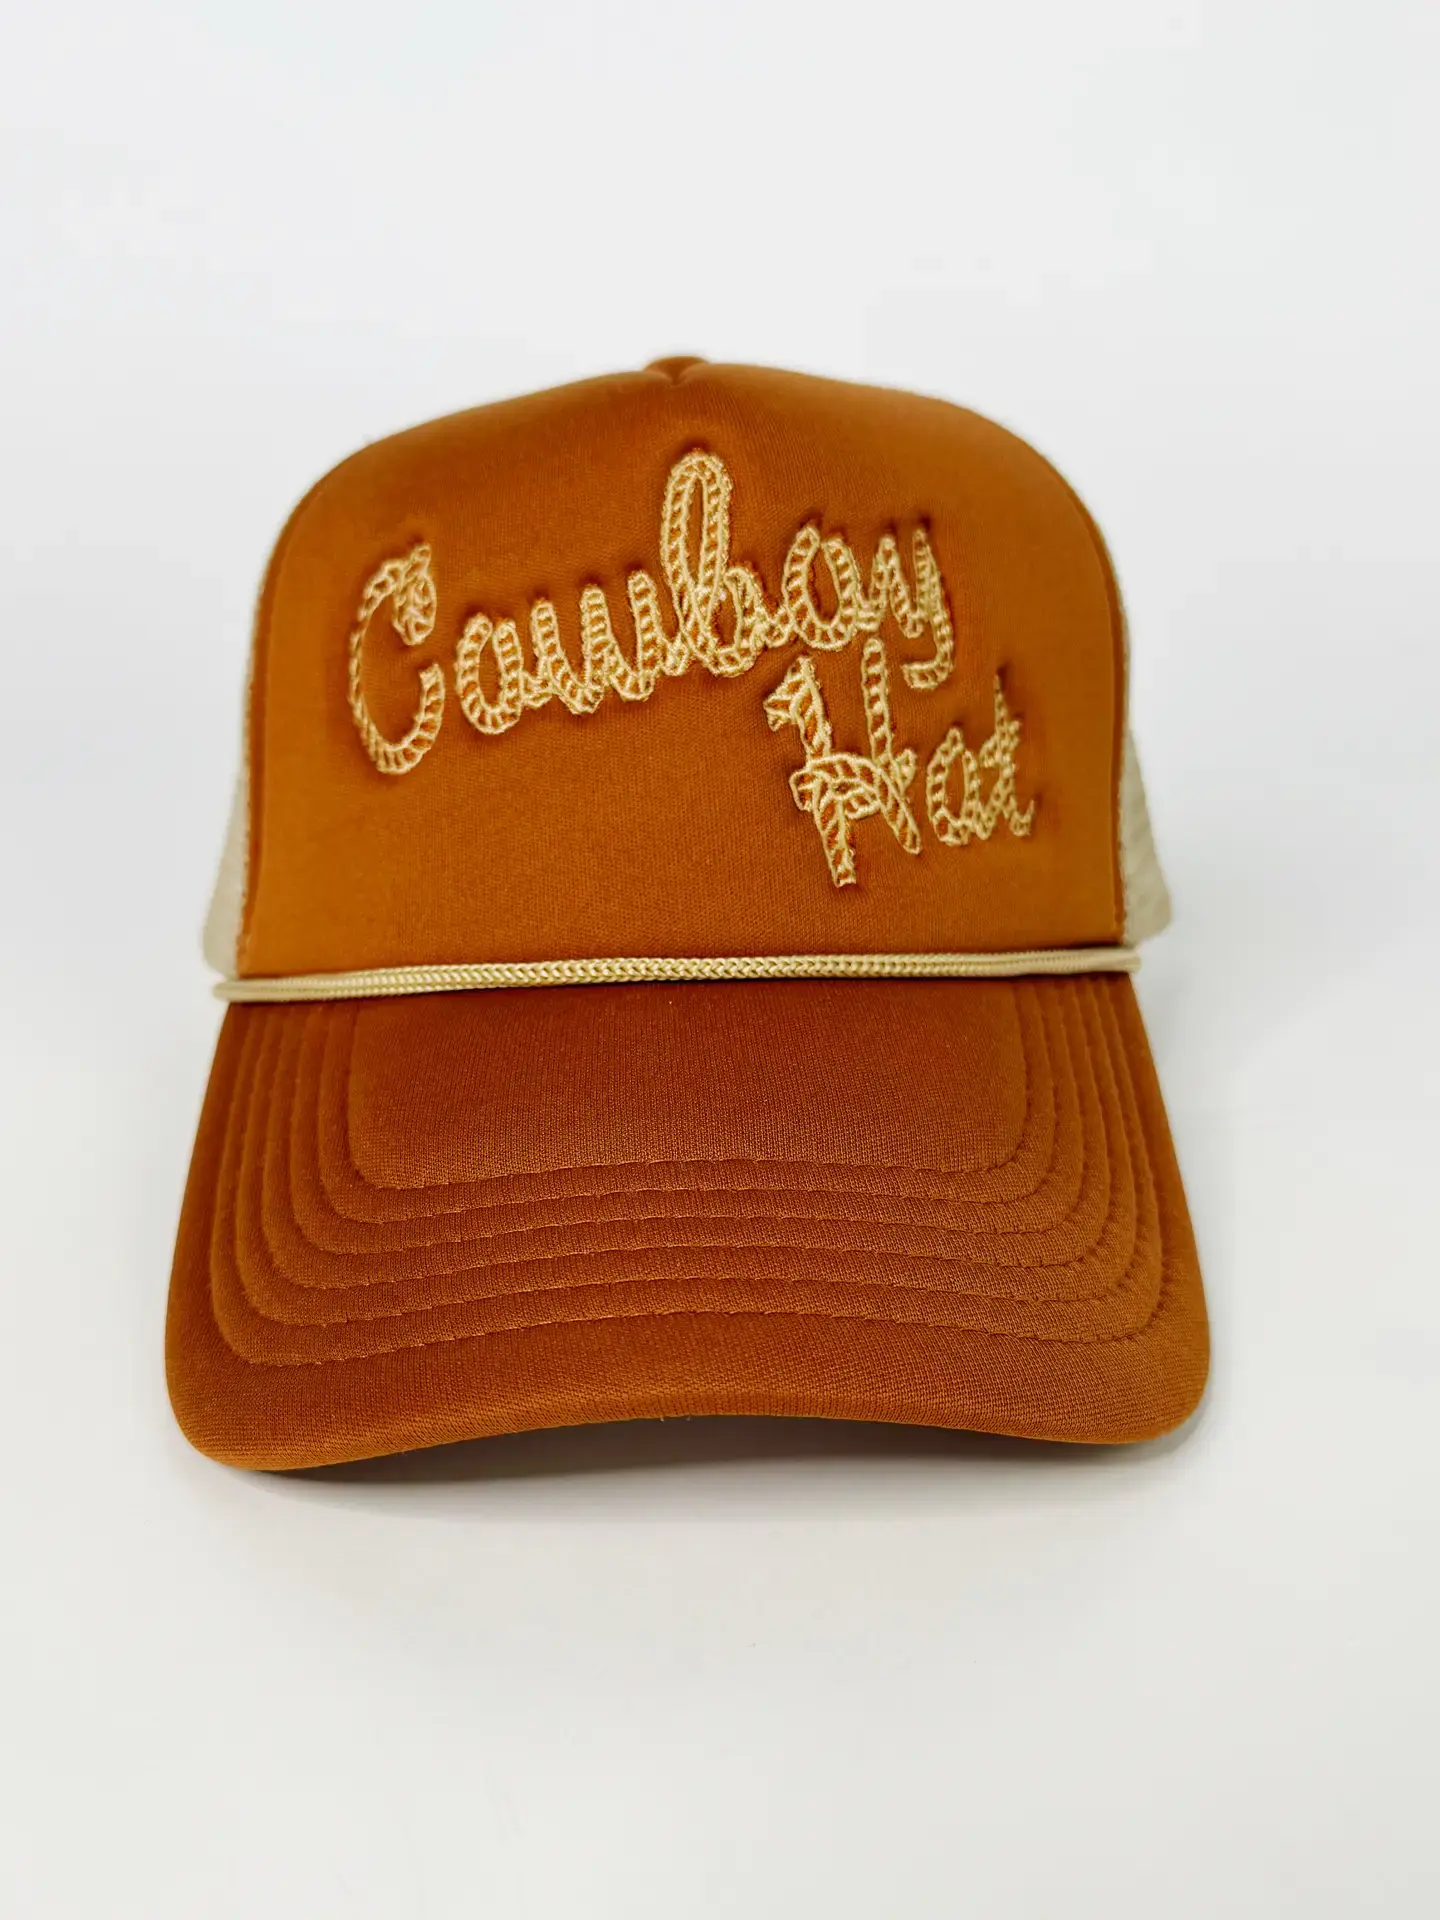 Ida Red Brown Cowboy Hat Trucker Hat